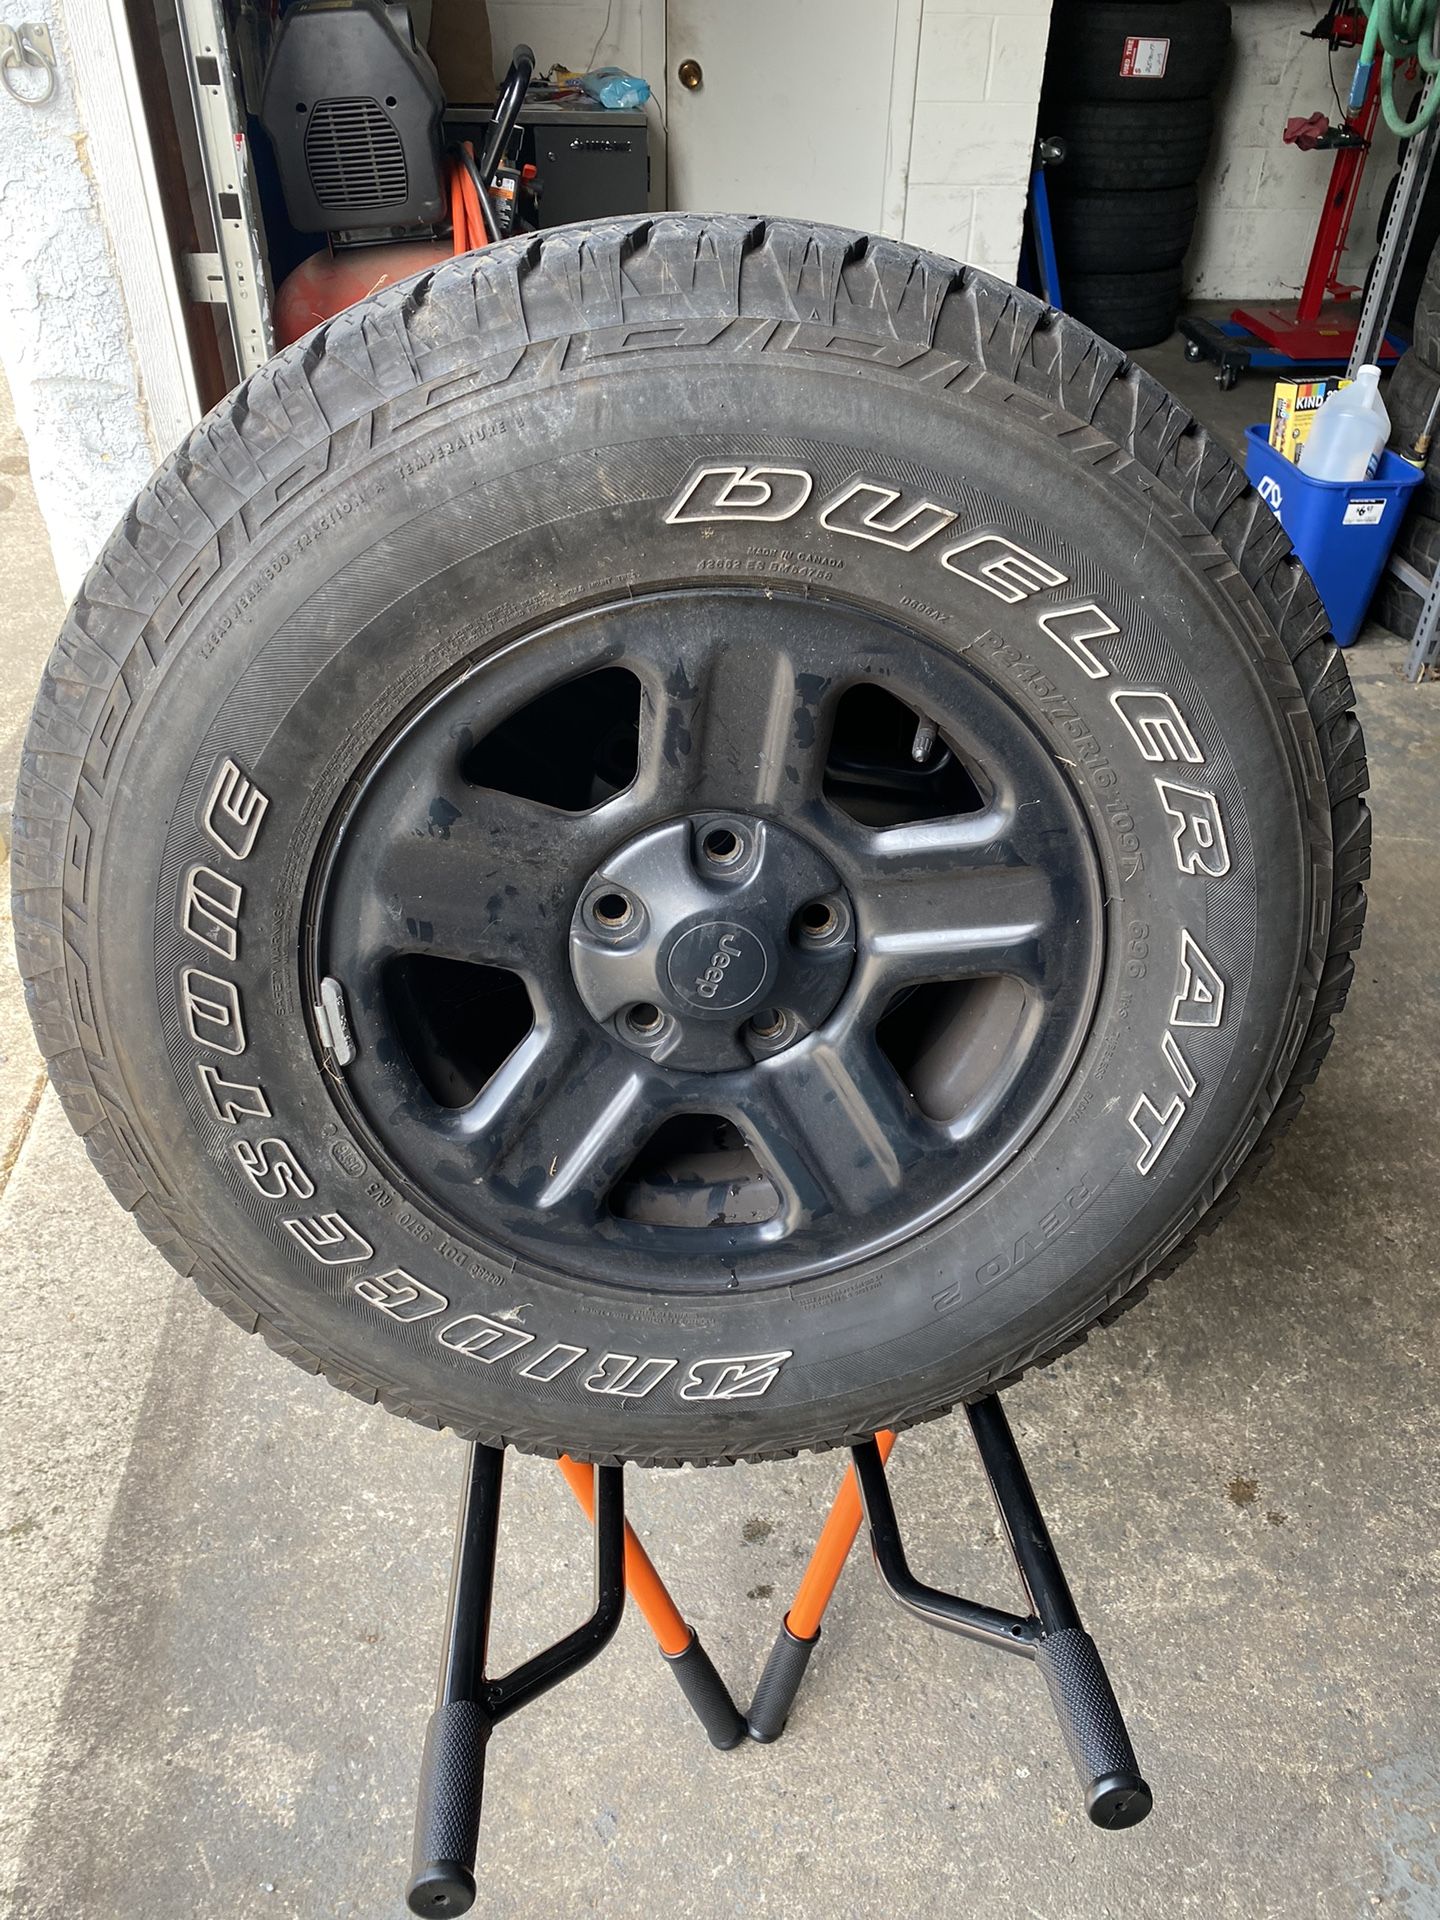 5) 245/75/16 Bridgestone Dueler AT Revo2 Tires